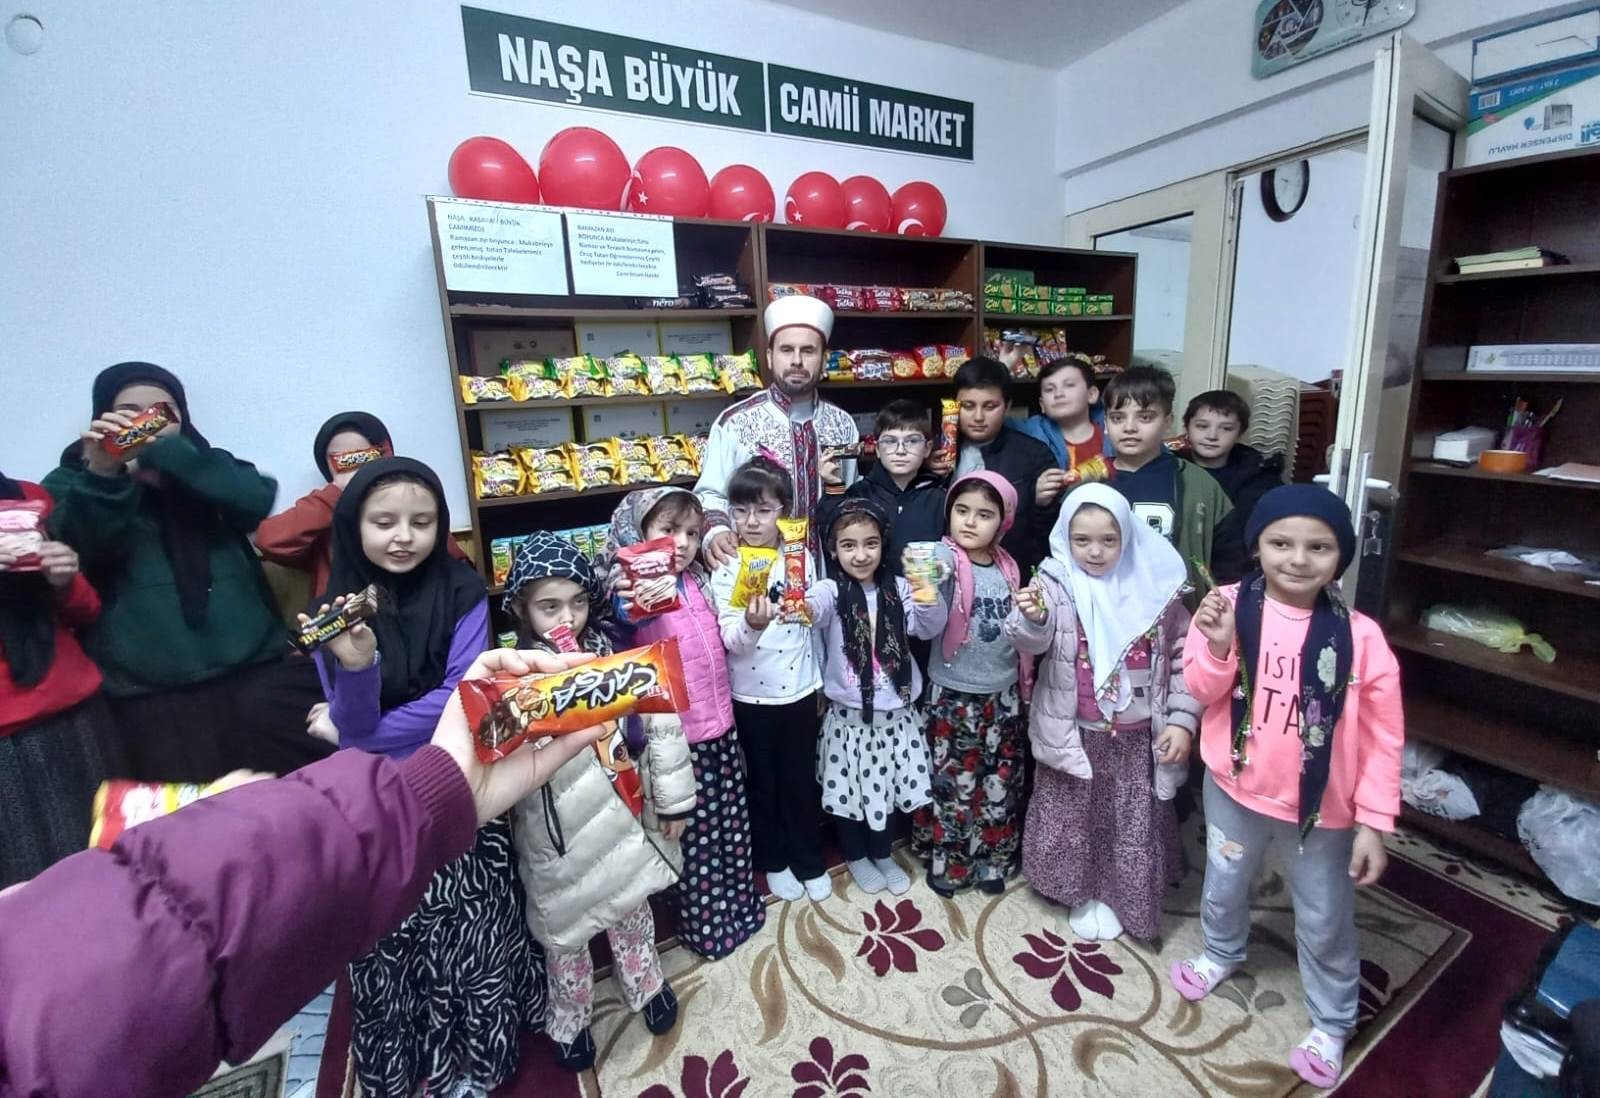 Genç Gazete Camiye Gelen Çocuklara Cami Market'ten Ücretsiz Alışveriş Fırsatı (4)